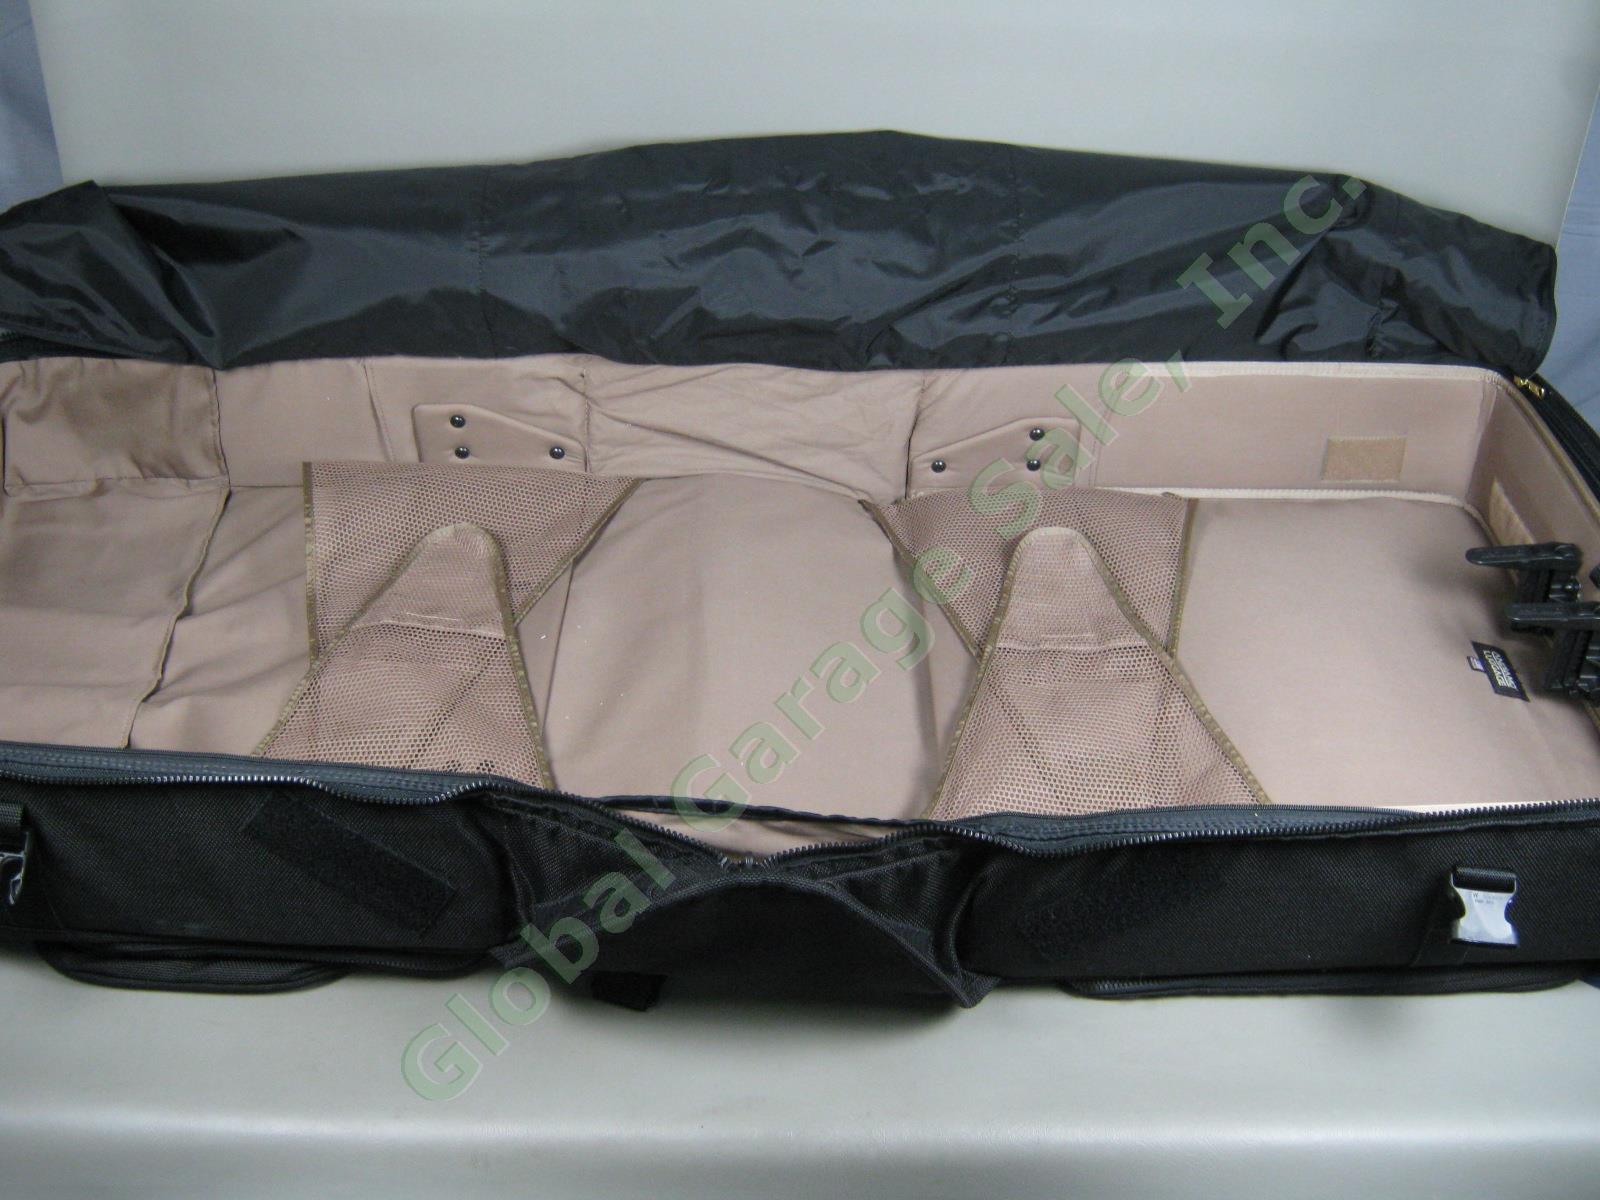 Andiamo Valoroso Wheeled Wardrobe Garment Bag Black Luggage 25x24x16 Exc Cond! 7